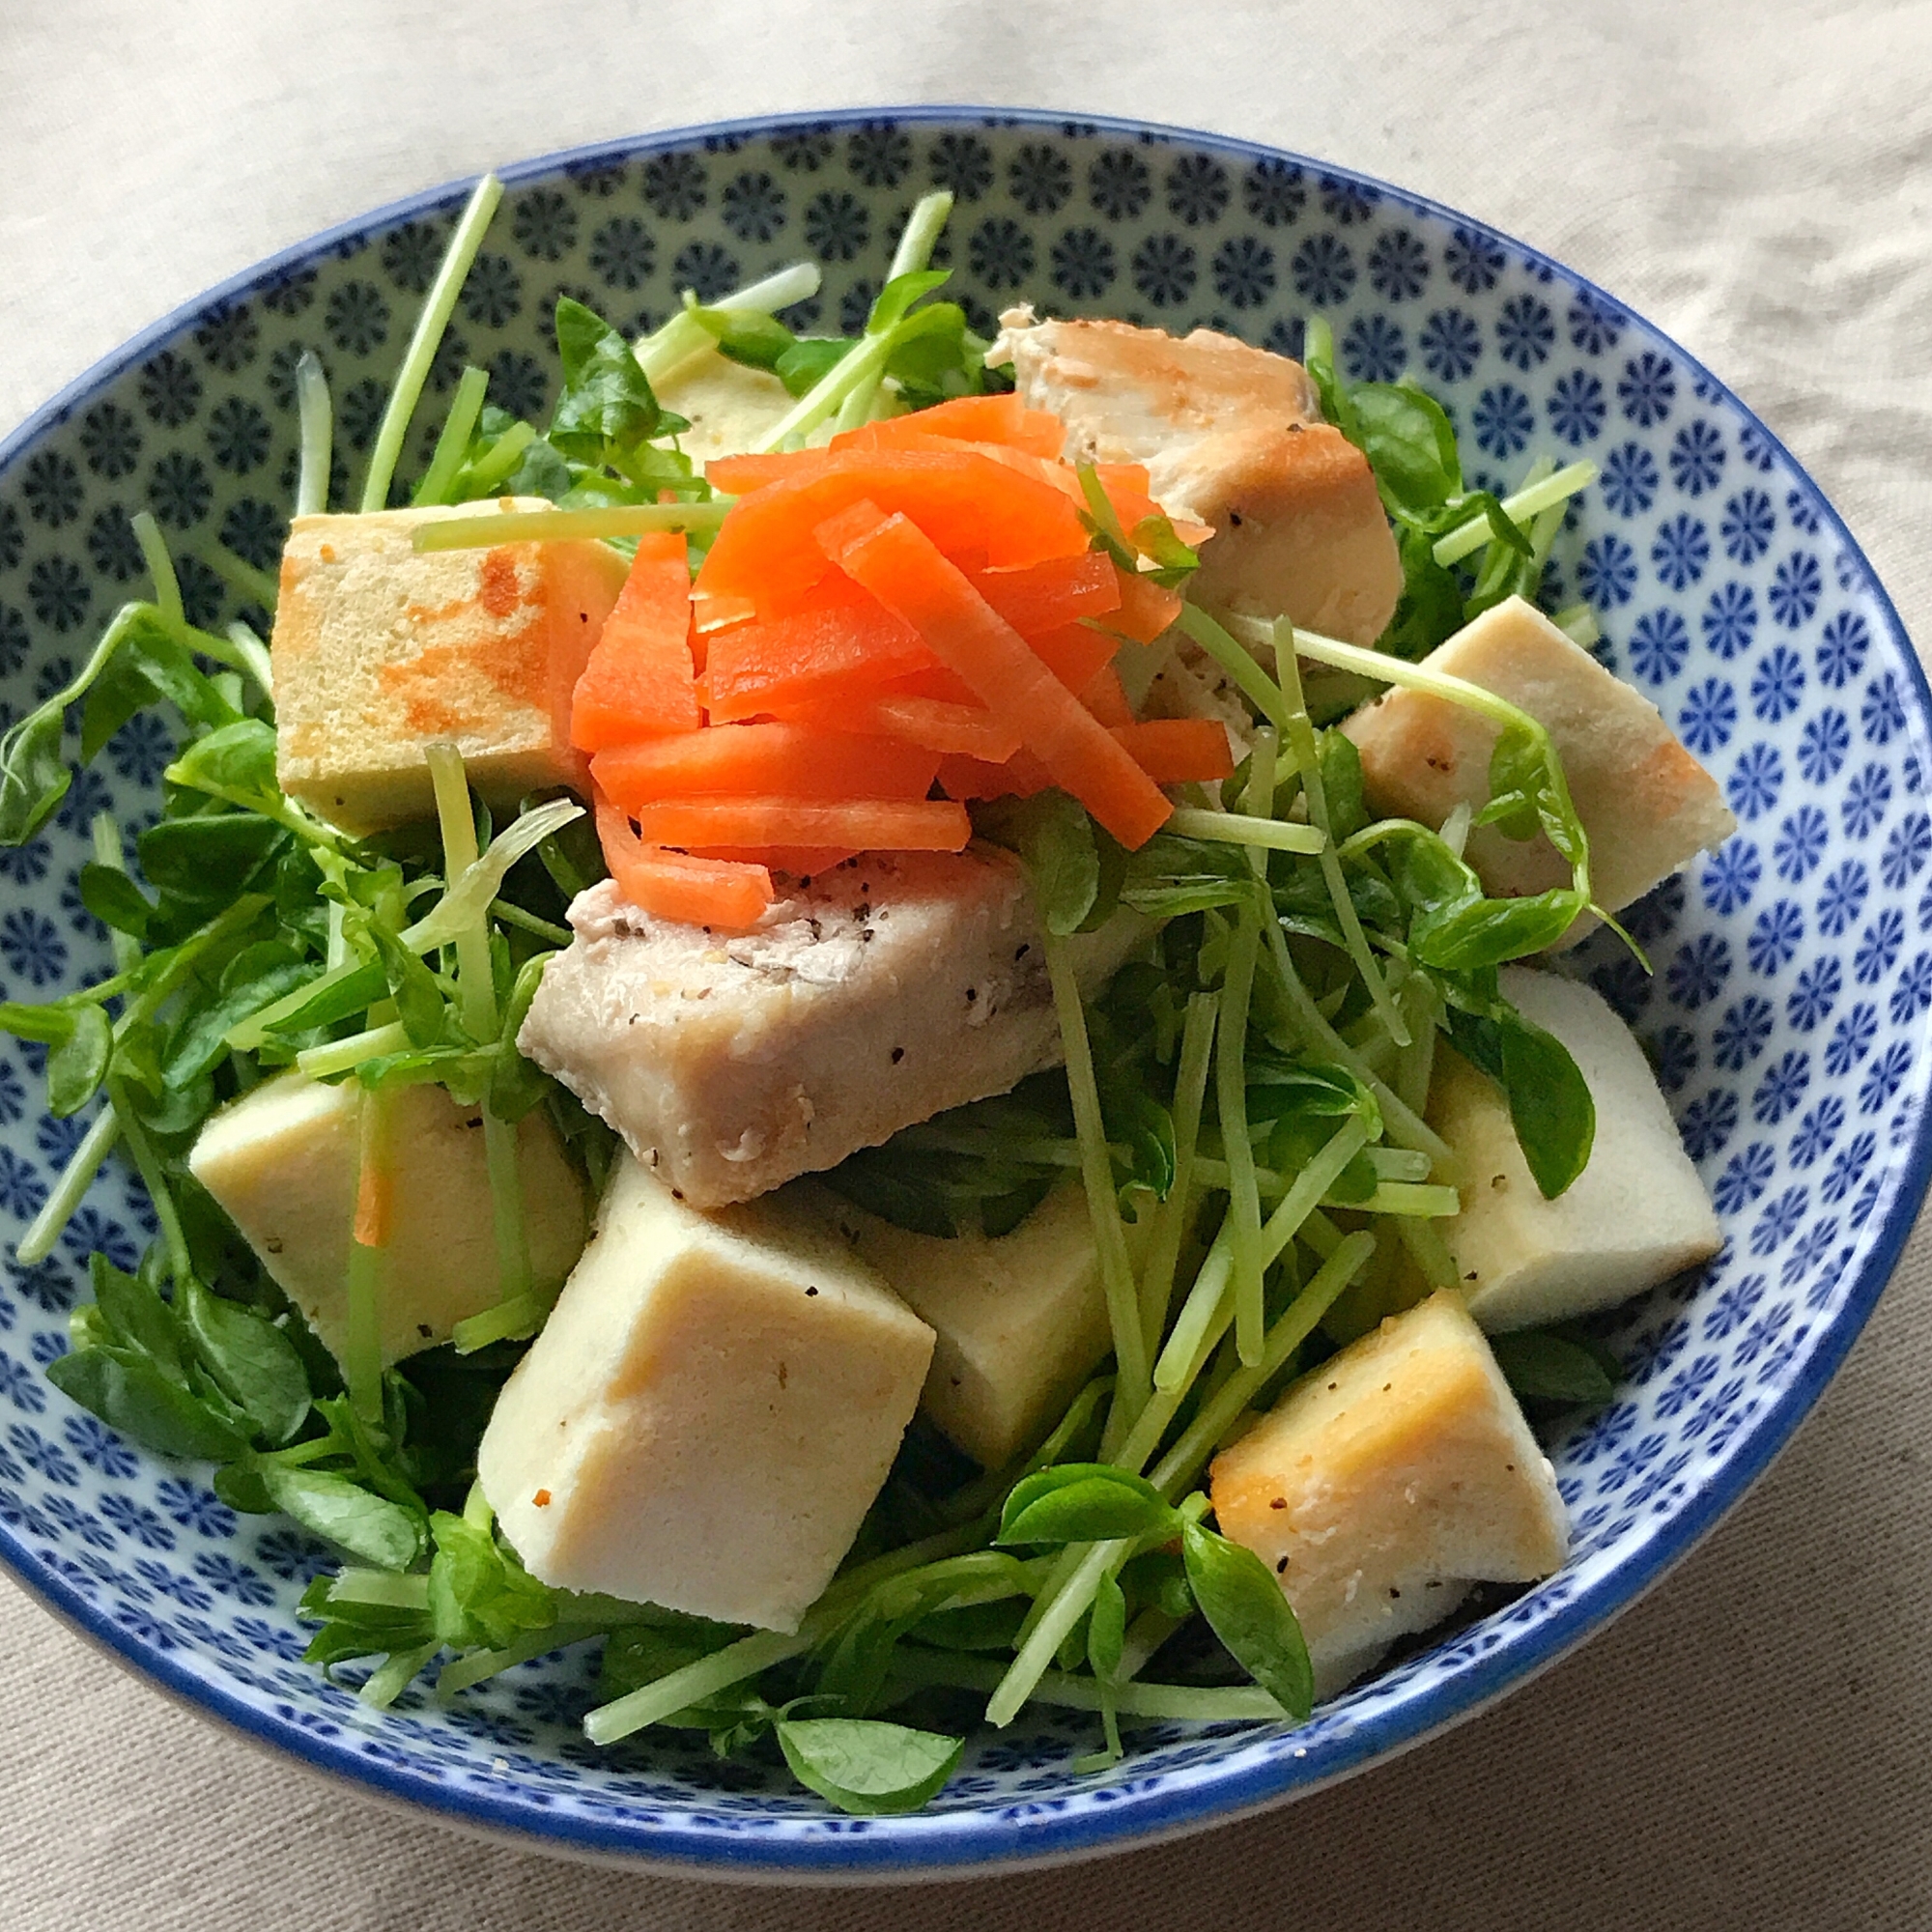 鶏肉と高野豆腐のおかずサラダ